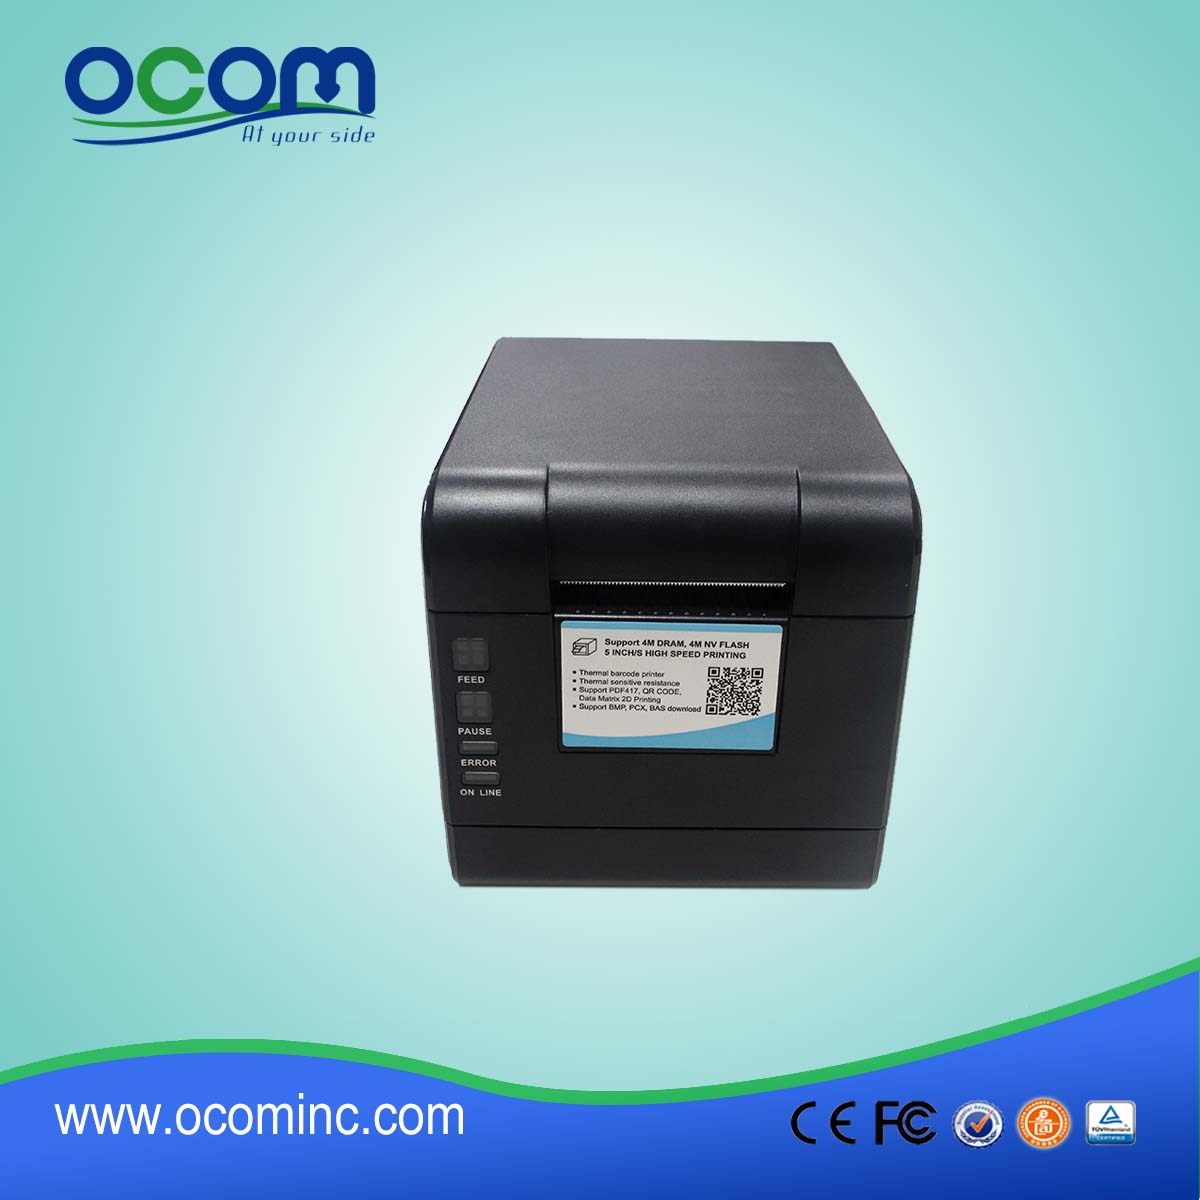 OCBP-006-U 2 Inches Direct Thermal Label Printer